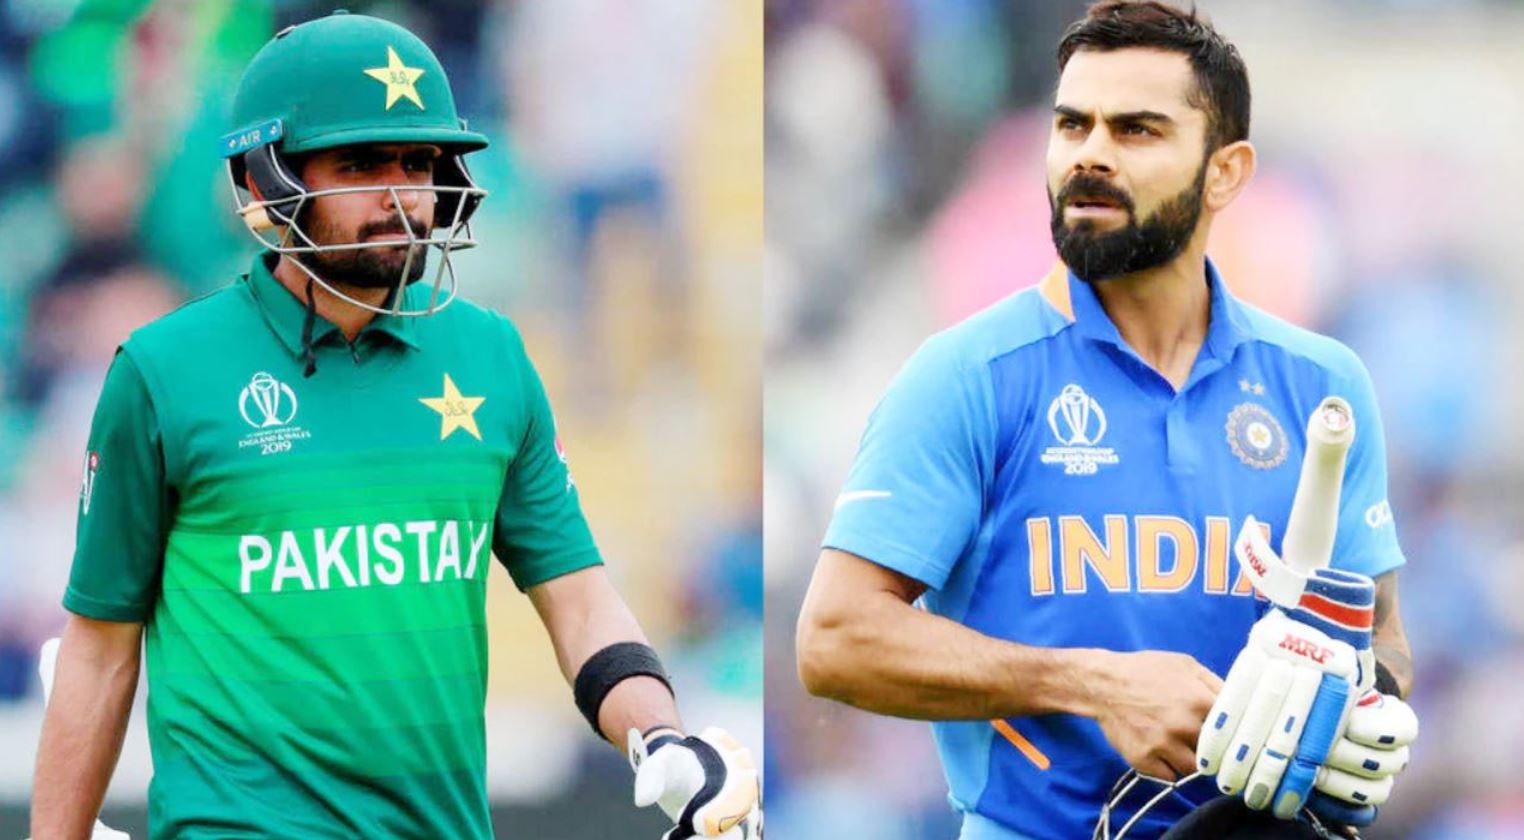 T20 World Cup: टीम इंडिया के ये खिलाड़ी पाकिस्तान का बजा देंगे बैंड, साबित होंगे बड़ा खतरा